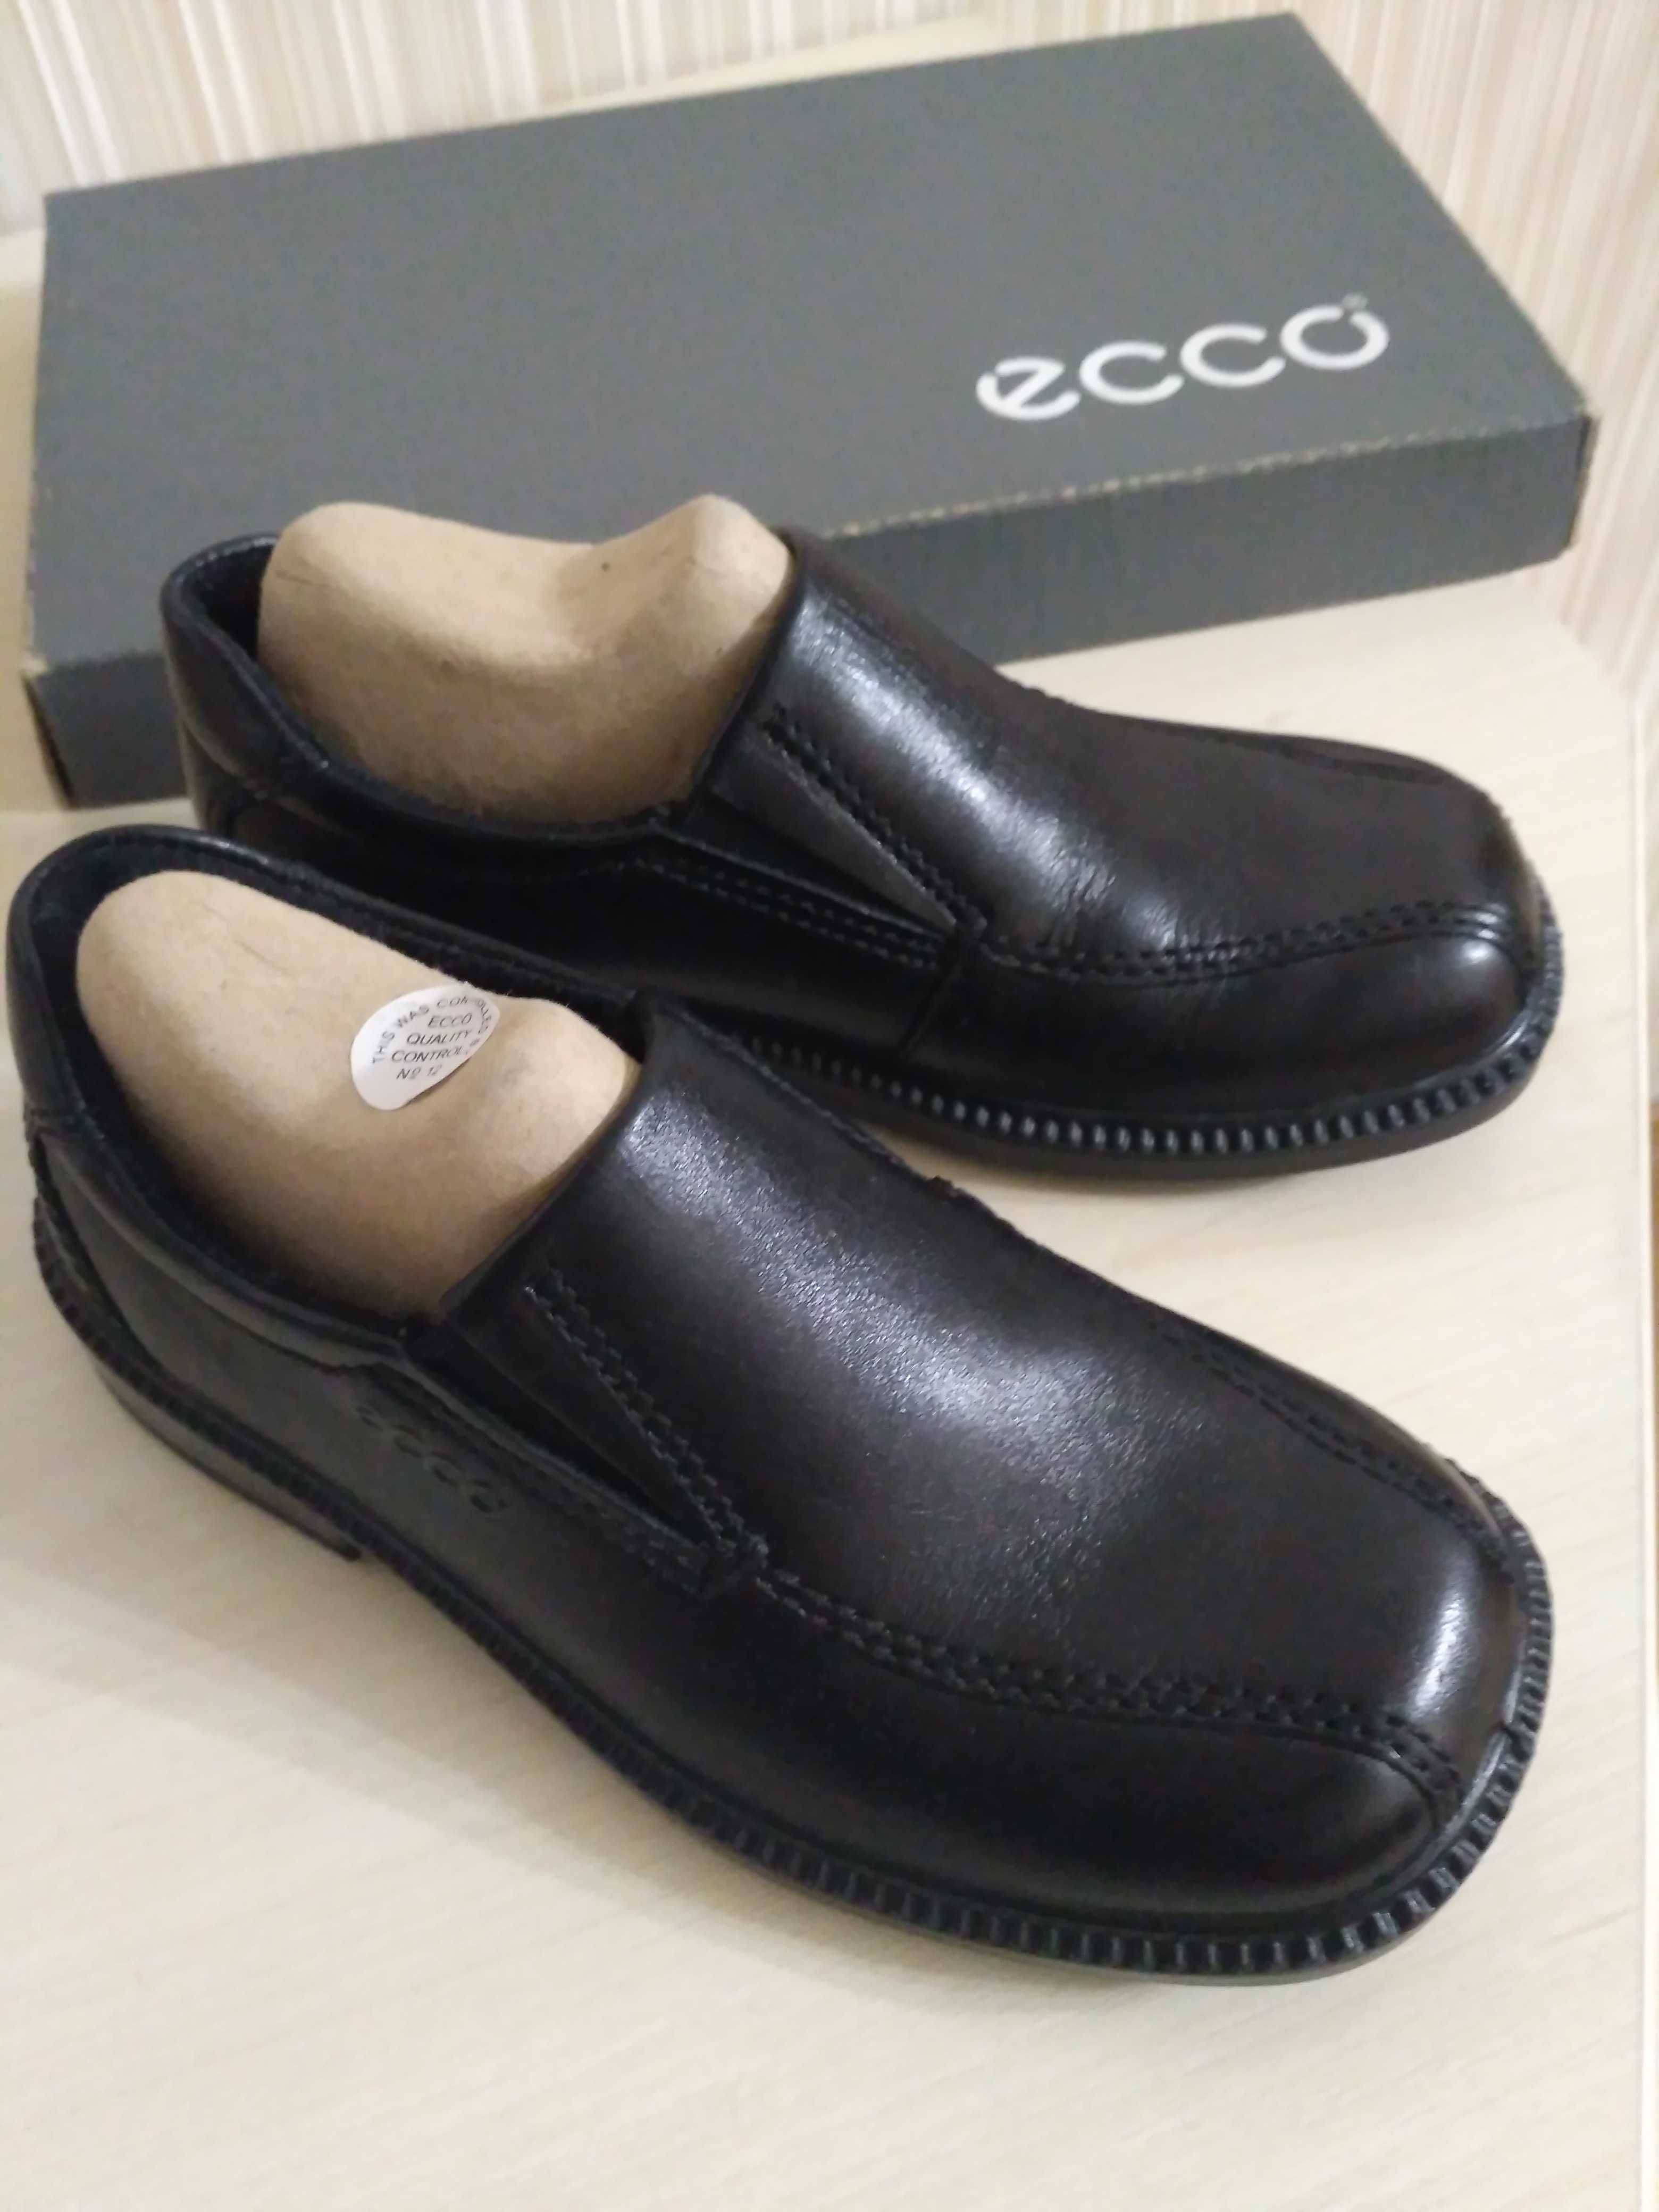 Новые туфли Ecco 28 размера для мальчика. Стелька 18 см